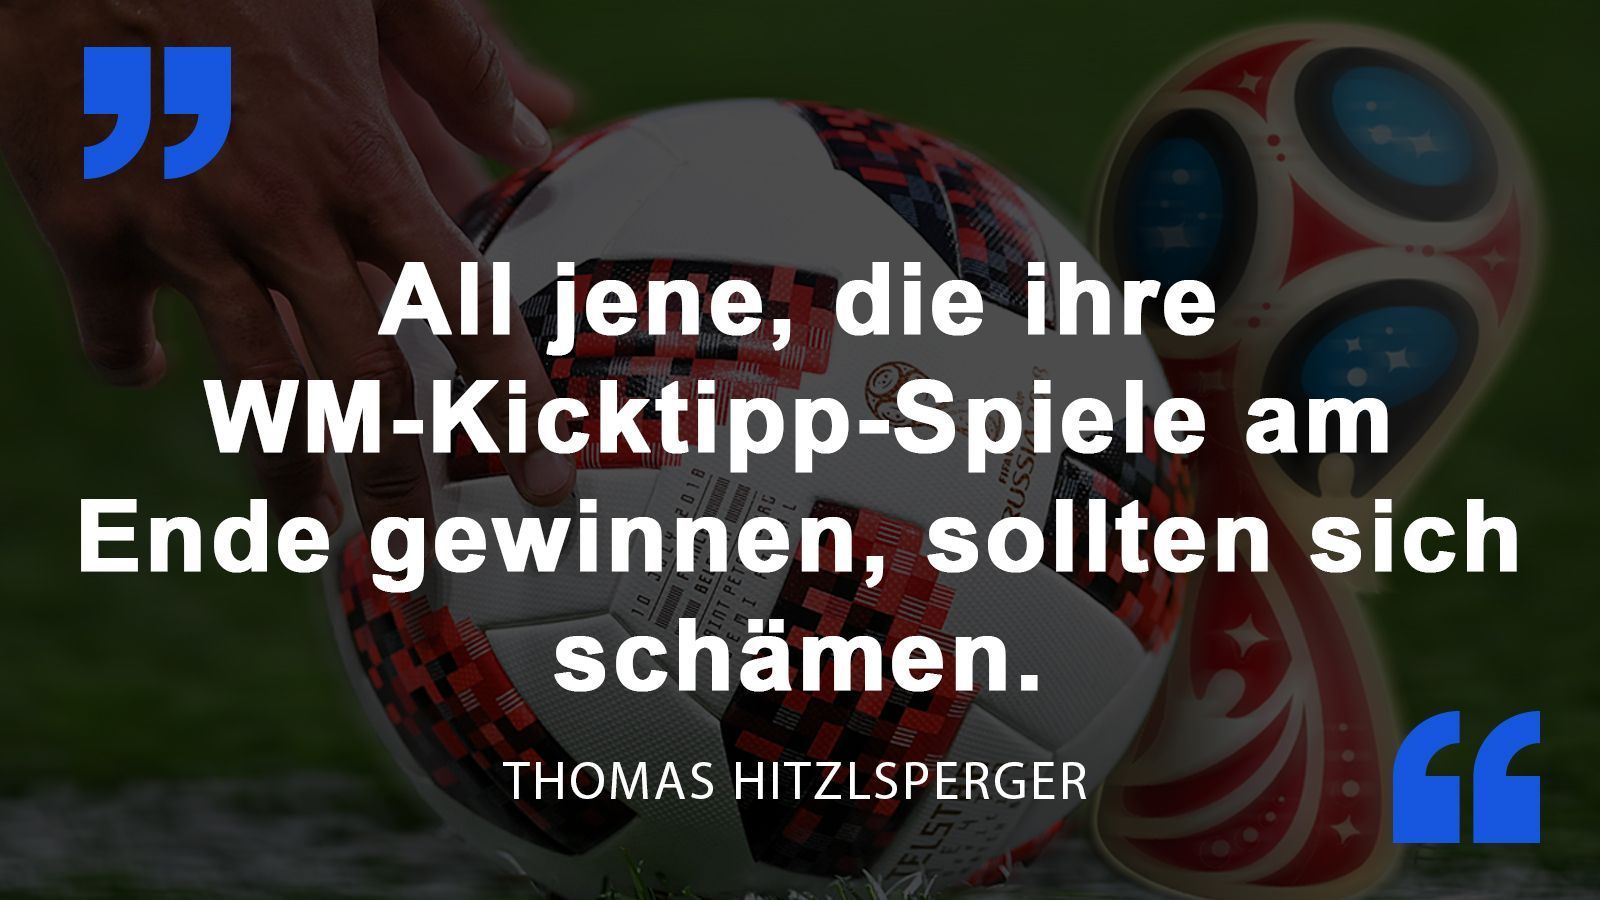 
                <strong>Thomas Hitzlsperger</strong><br>
                Der TV-Experte über die teils überraschenden Ergebnisse bei der WM.
              